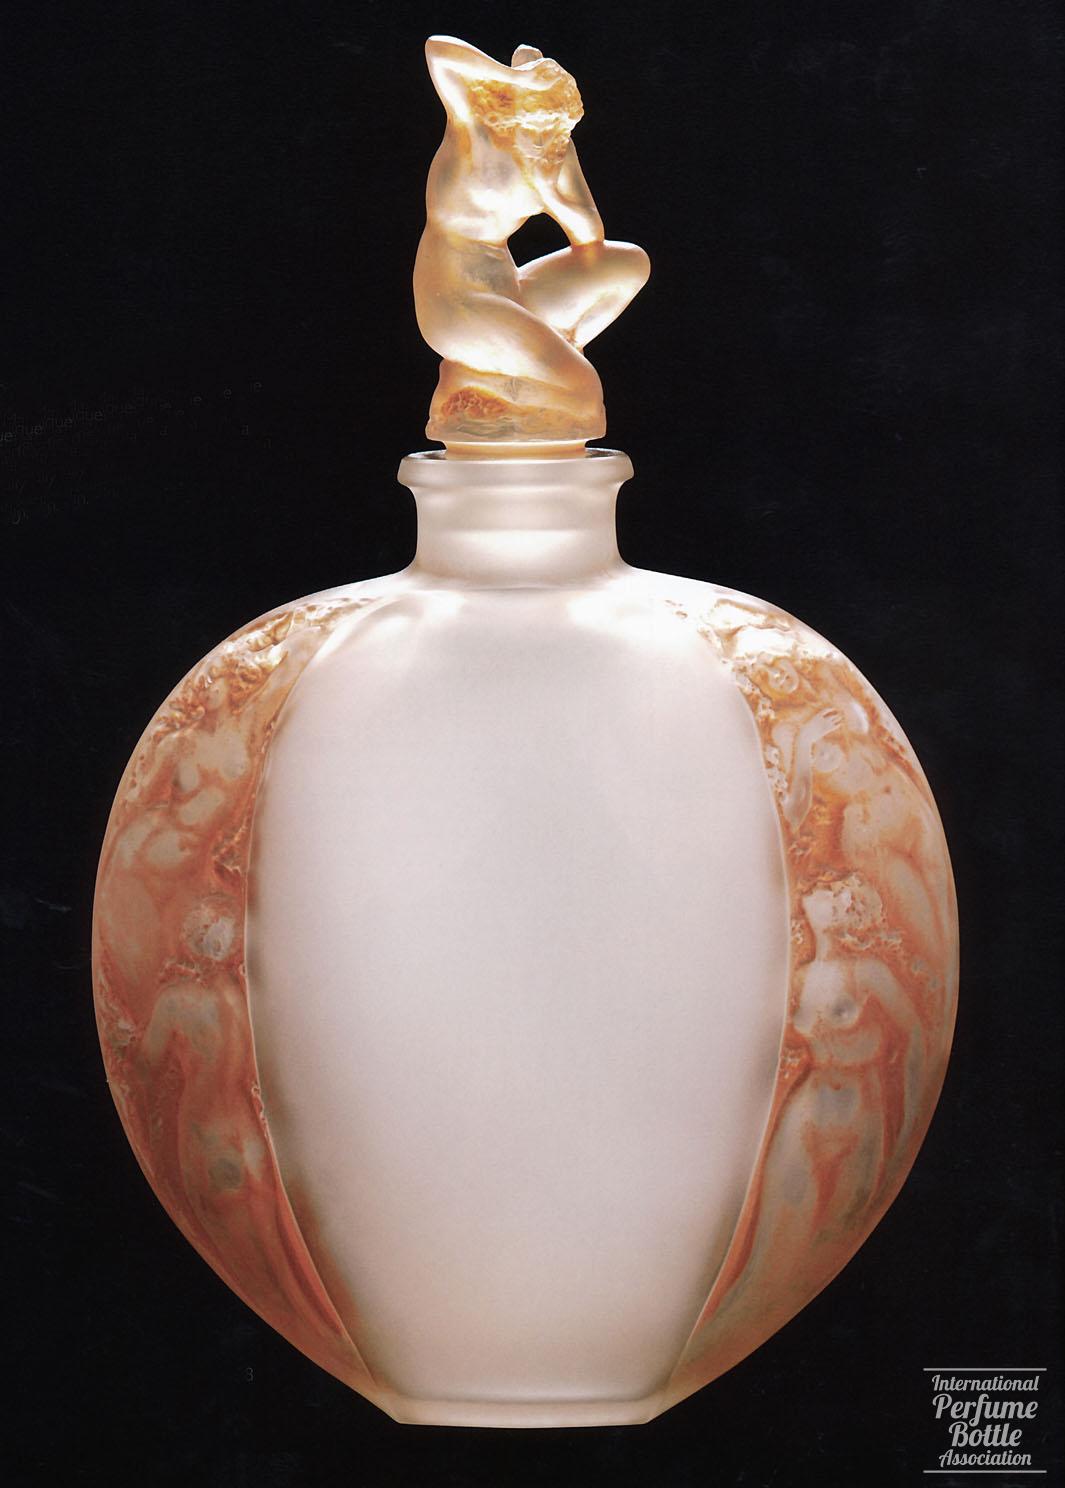 "Sirenes Avec Bouchon Figurine" by Maison Lalique